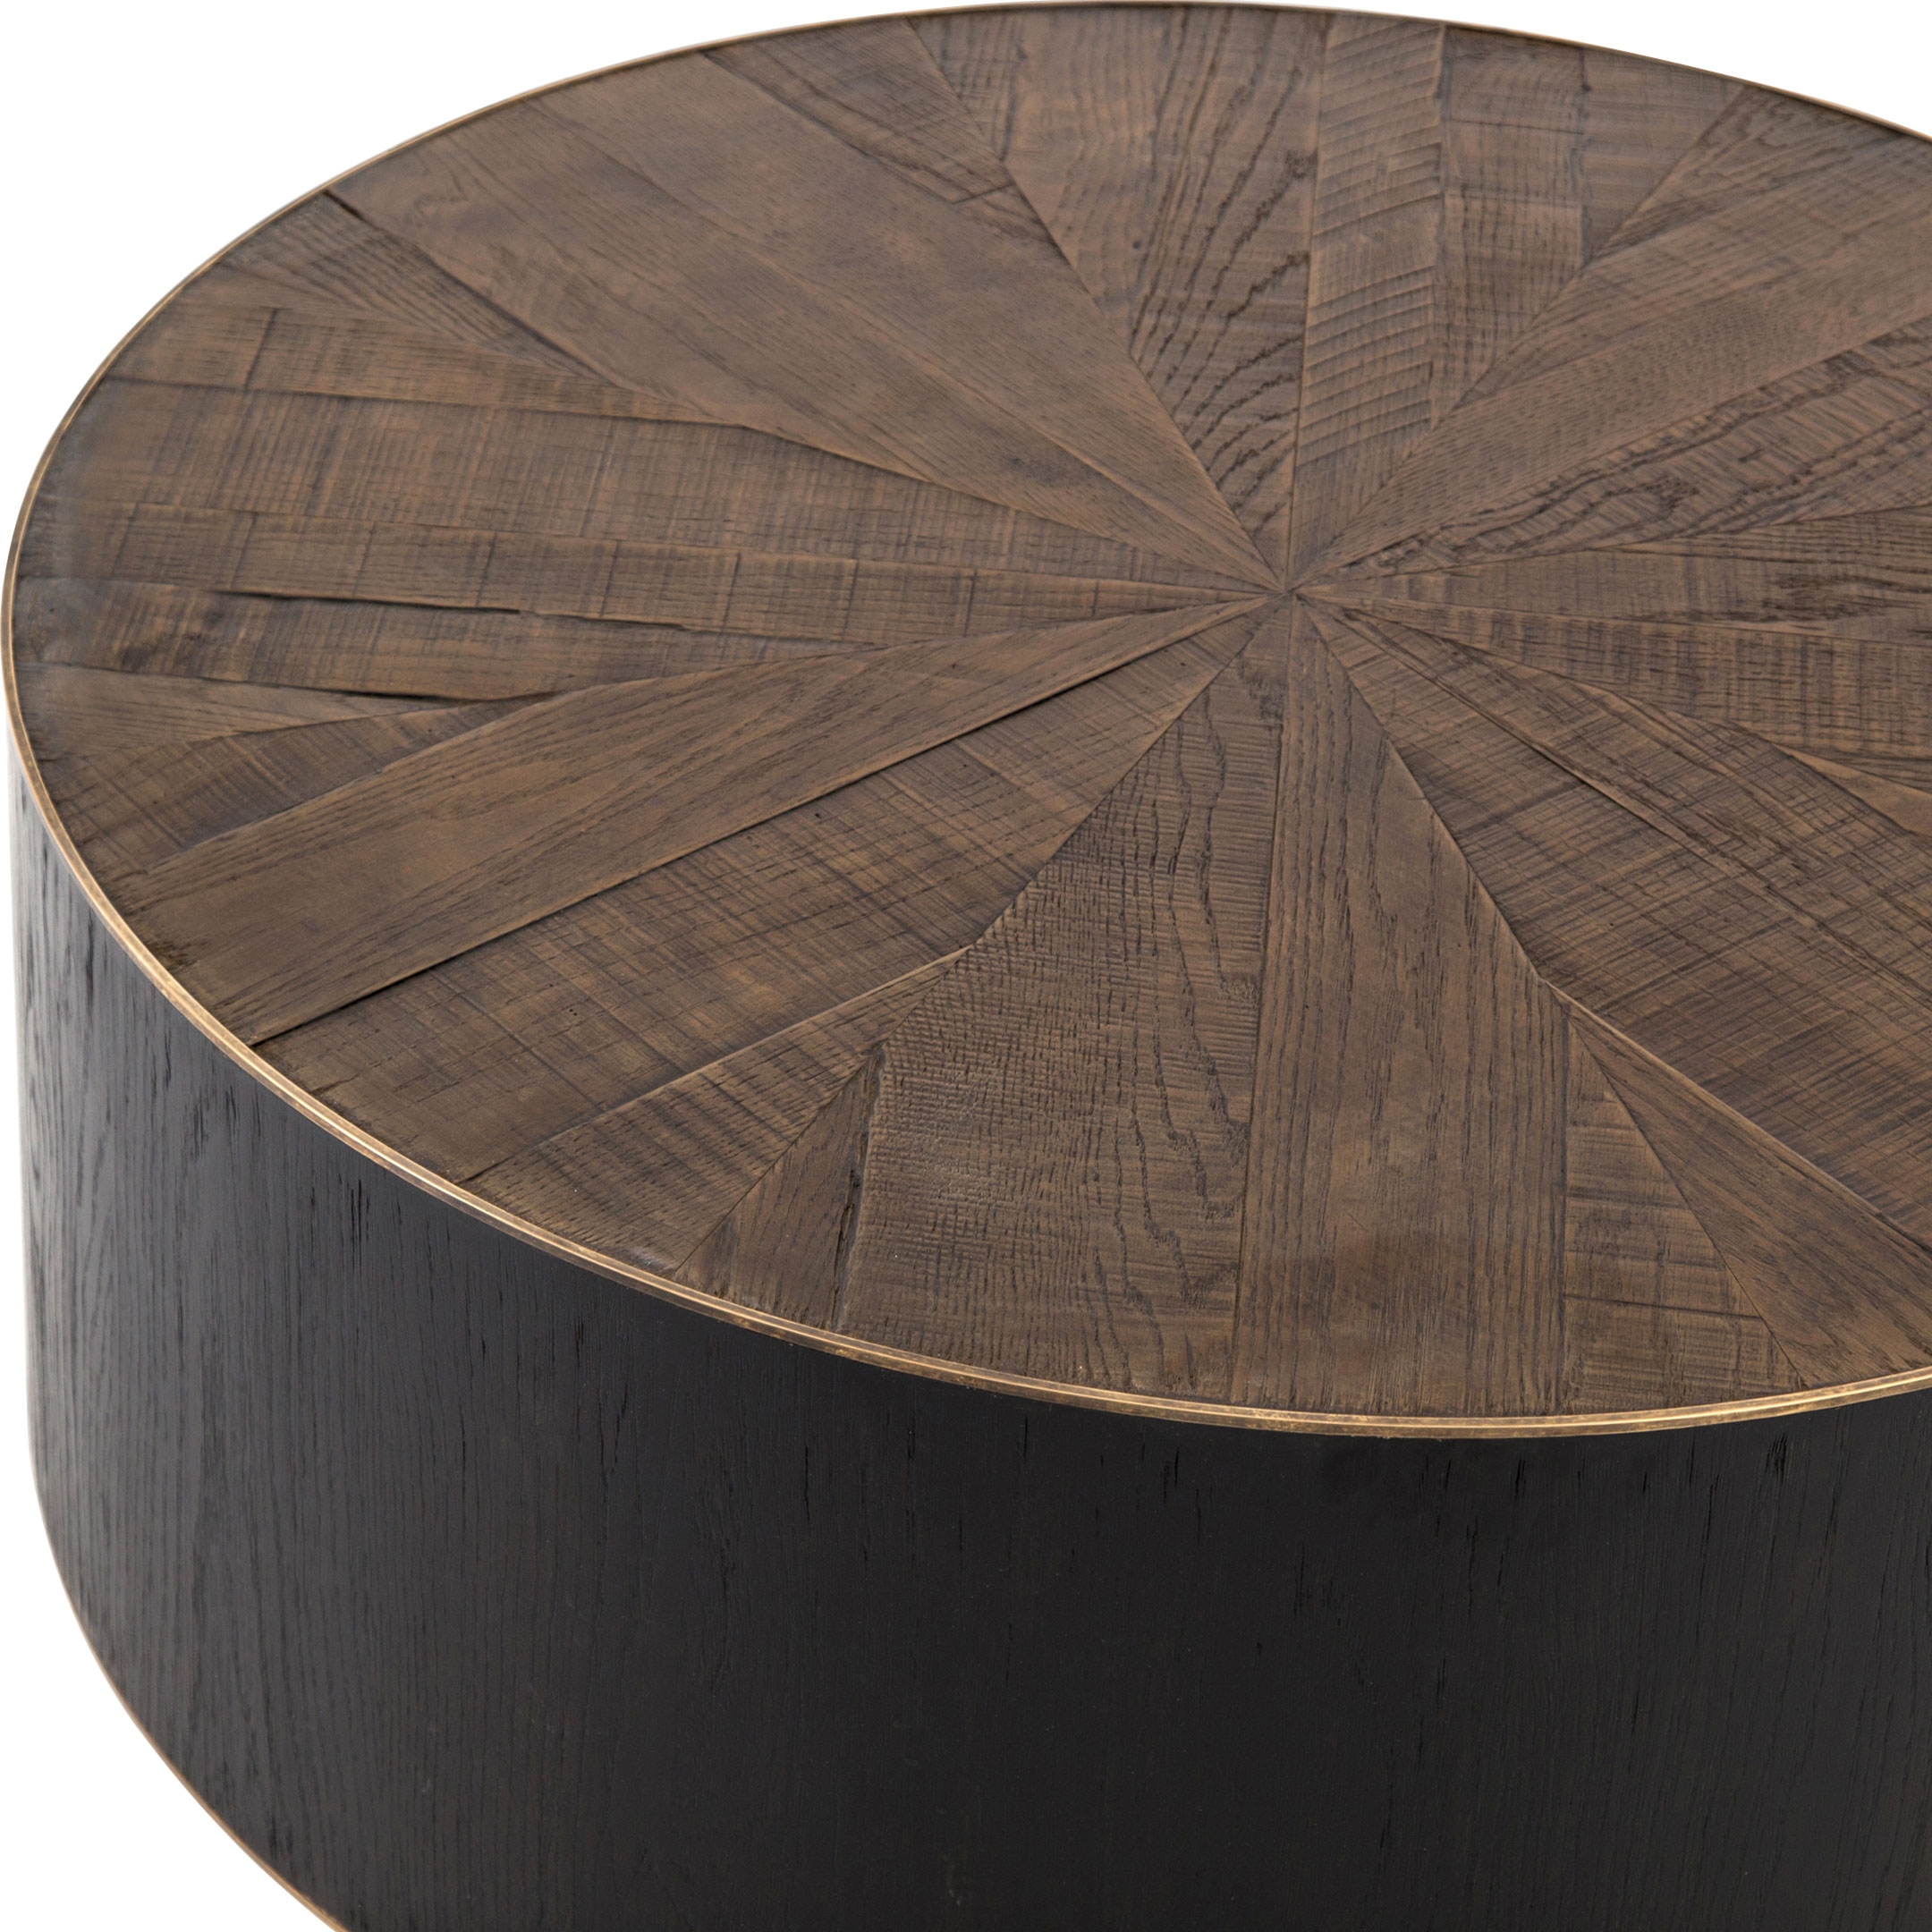 Oldman Rustic Lodge Black Brown Round Oak Wood Coffee Table - Image 3